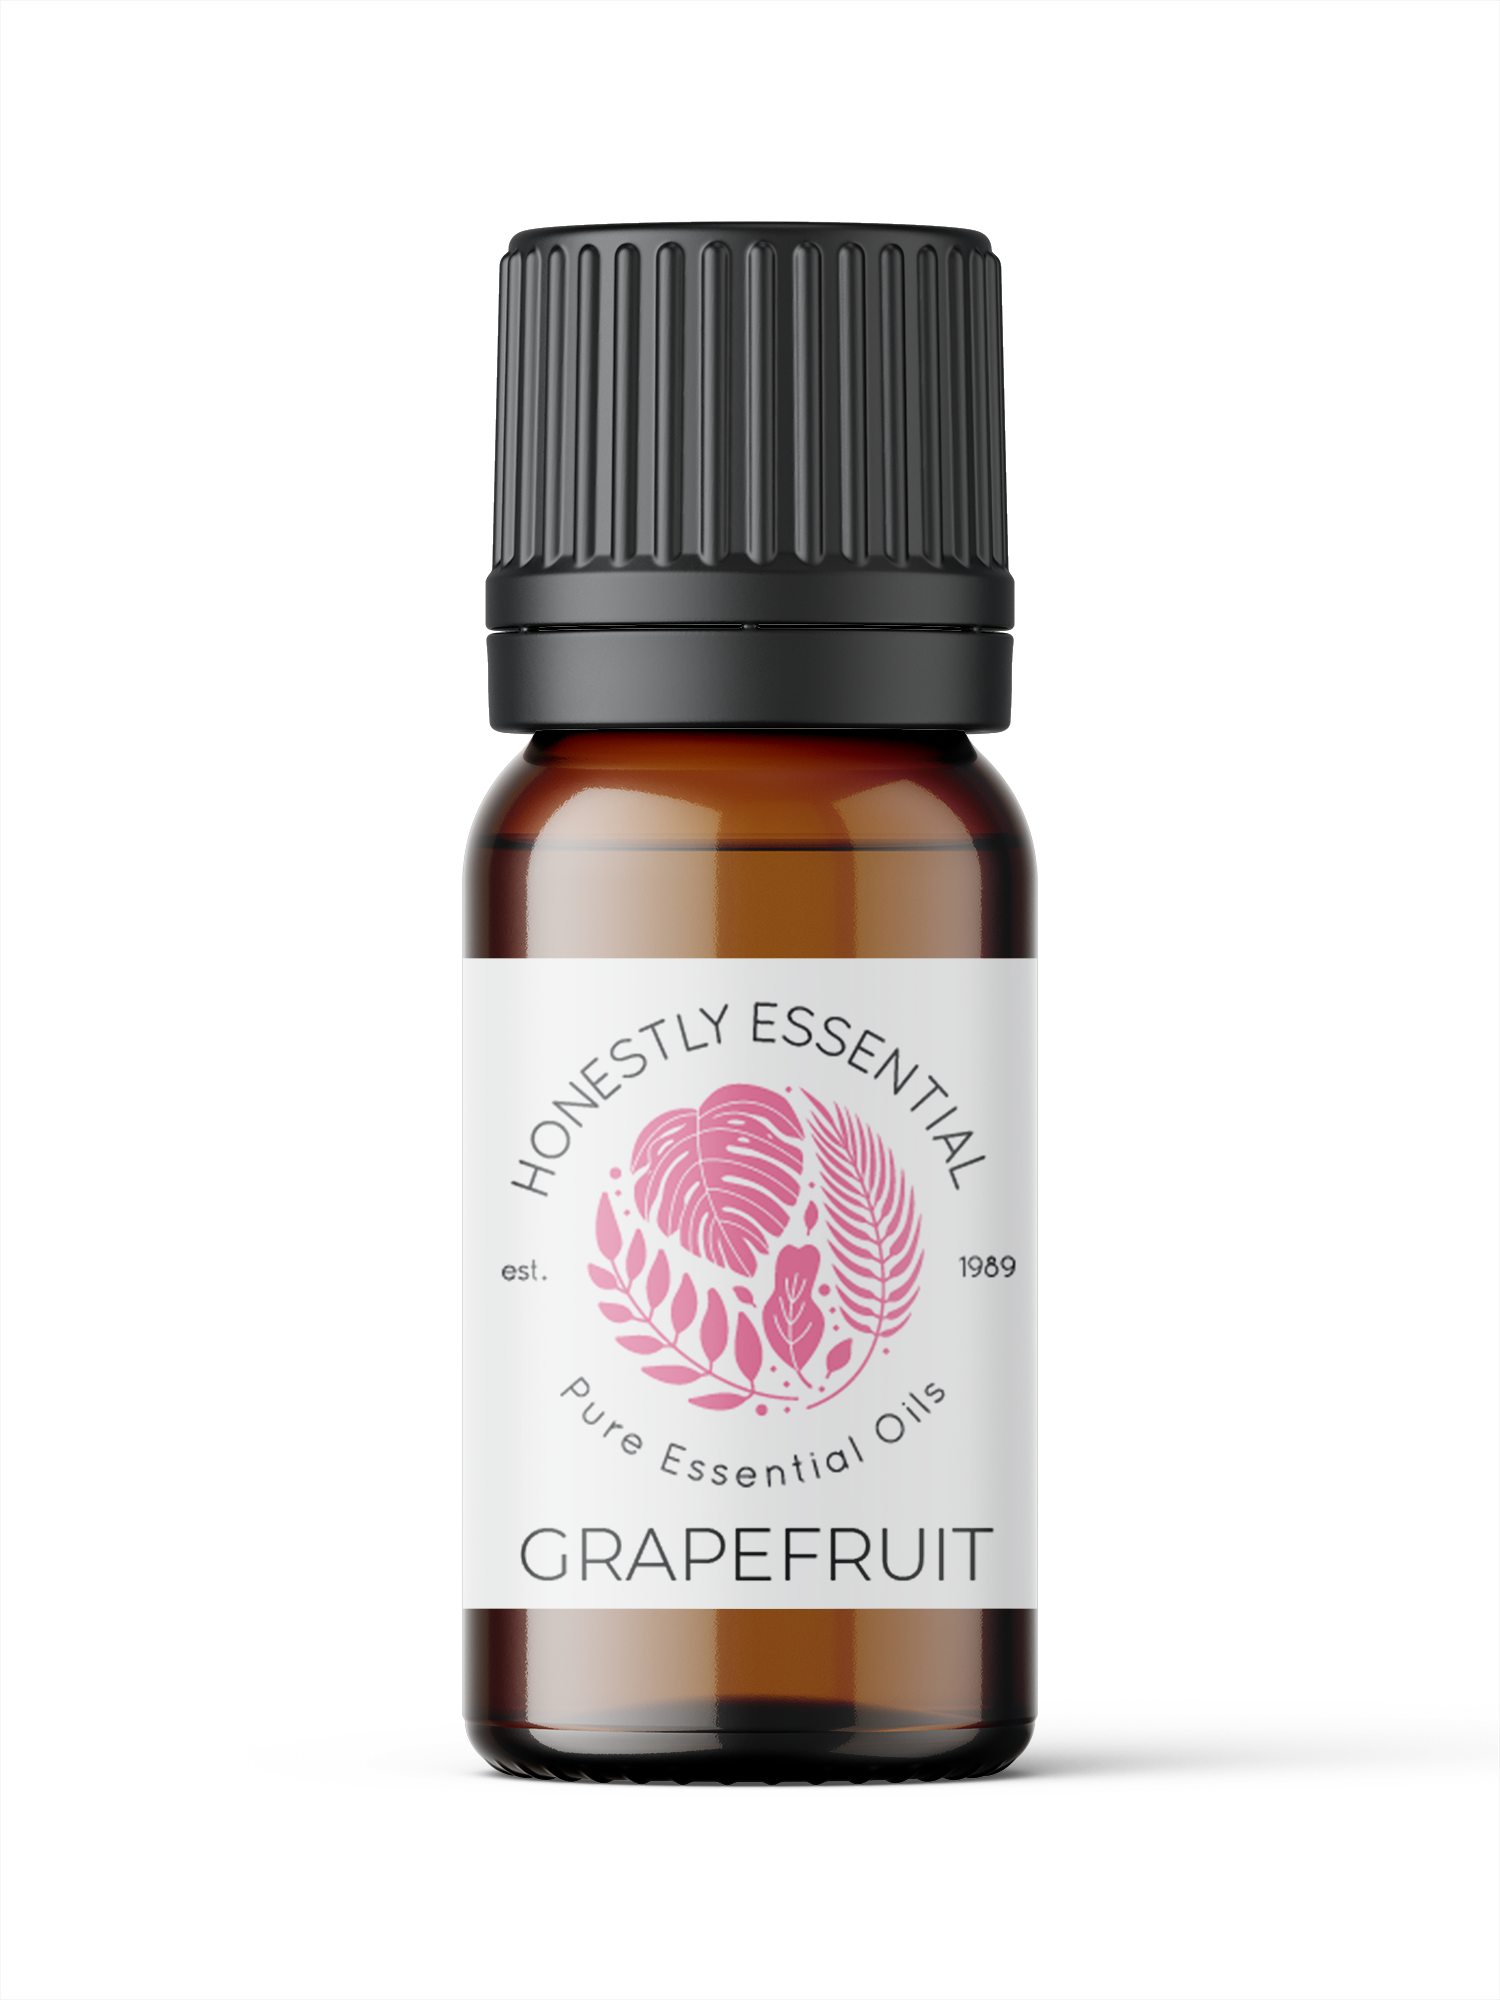 Grapefruit Pink Essential Oil - Essential Oils | Honestly Essential Oils citrus, citrus essential oil, digestion, kid safe